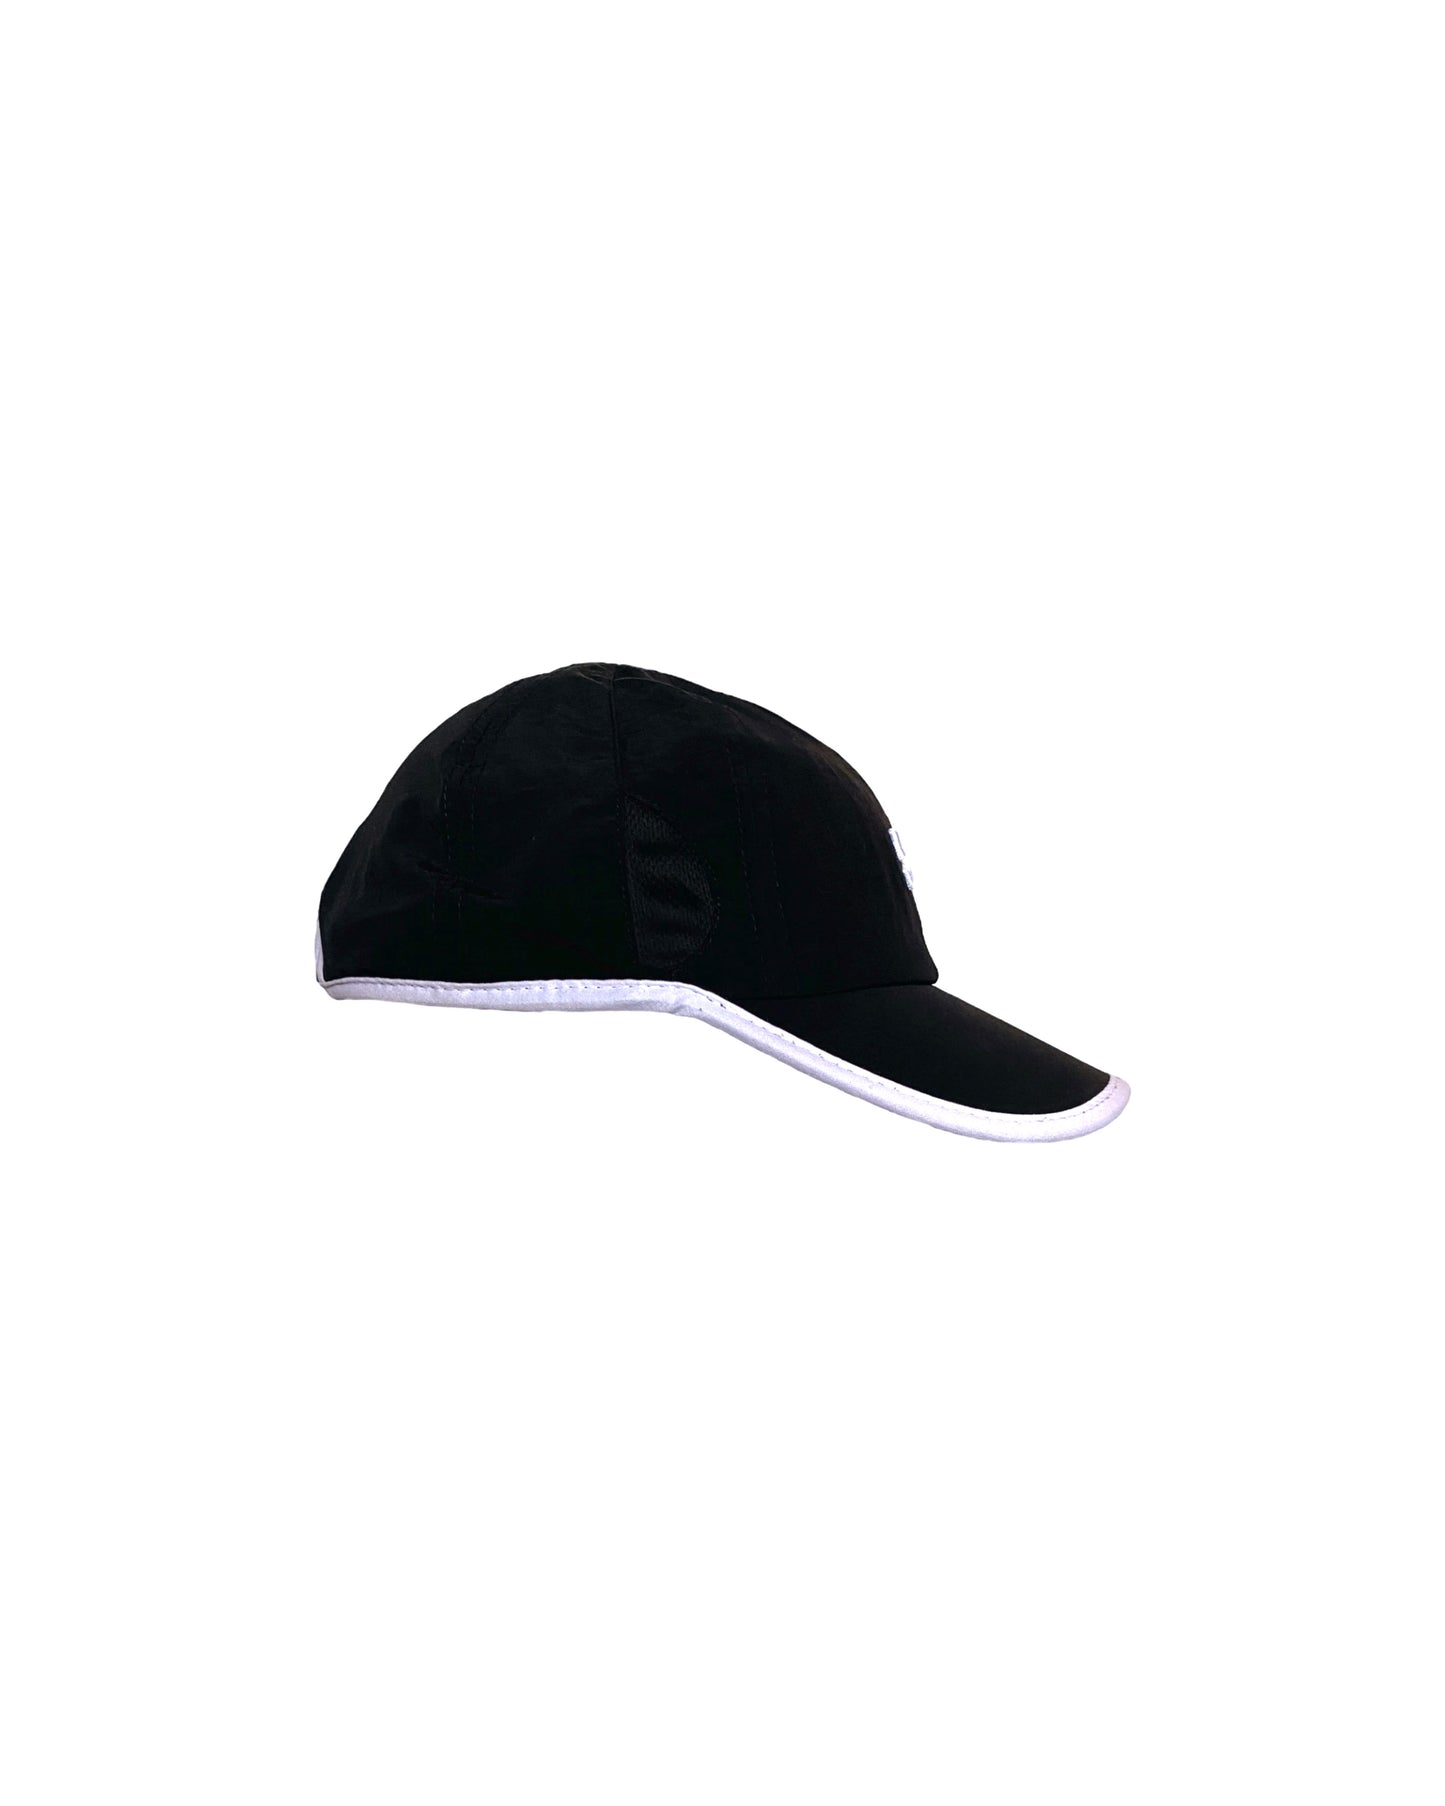 O2 Hat (Black) - ANGEL ARCADE